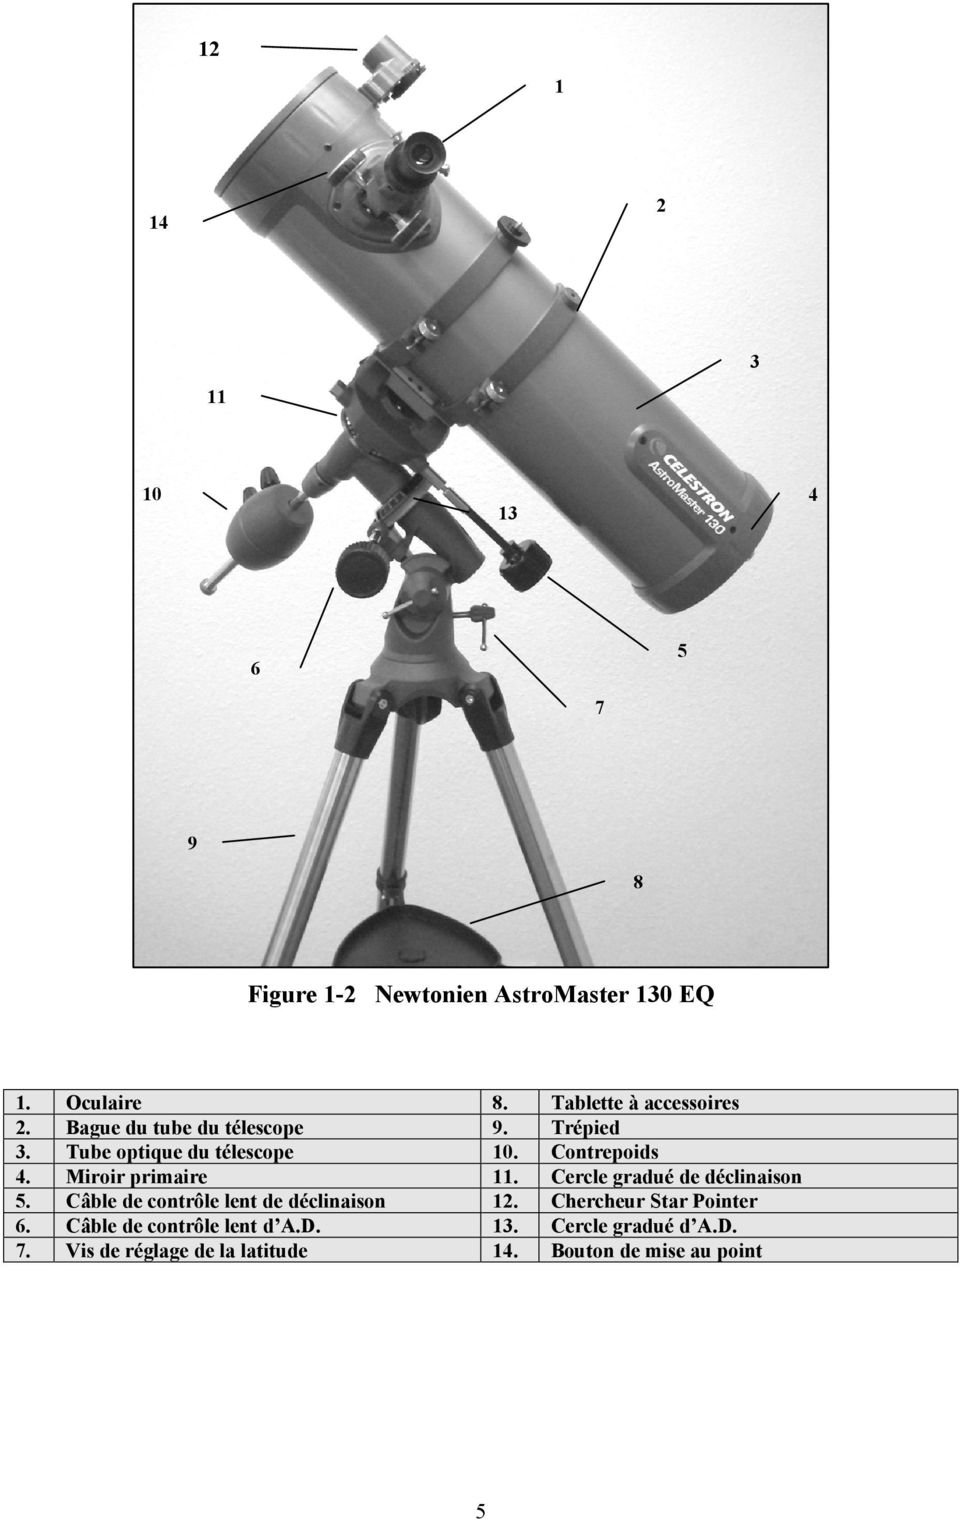 Oculaire Bague du tube du télescope Tube optique du télescope Miroir primaire Câble de contrôle lent de